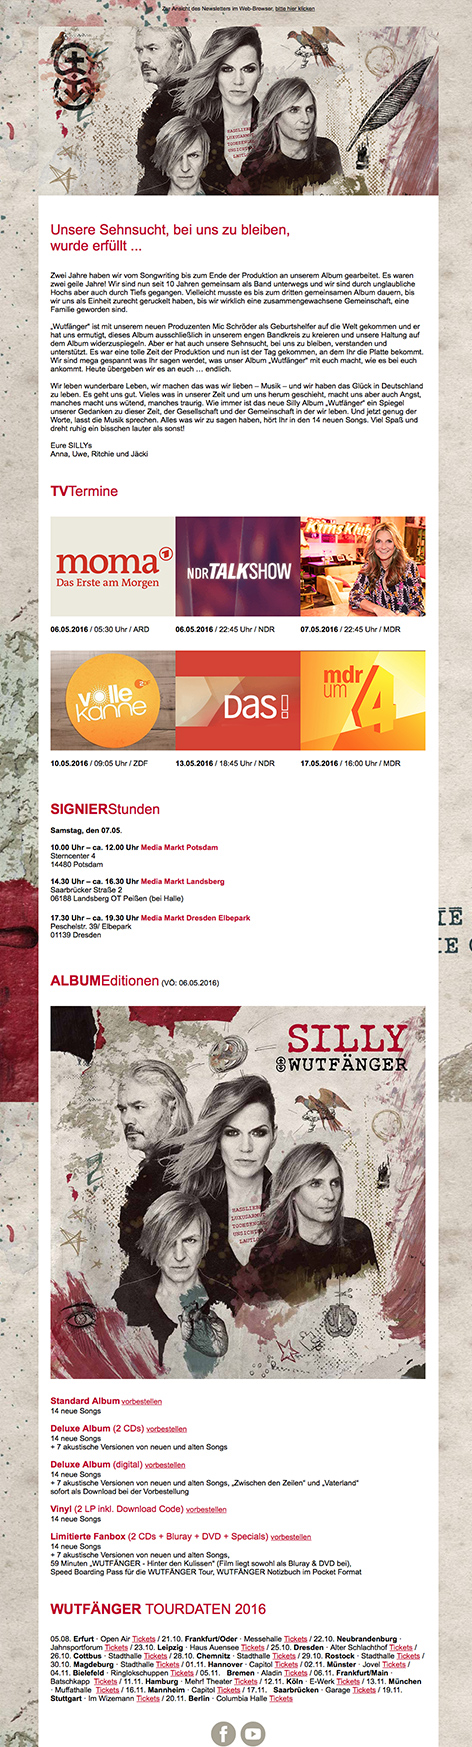 Newsletter SILLY / TV-Termine und Album-Editionen